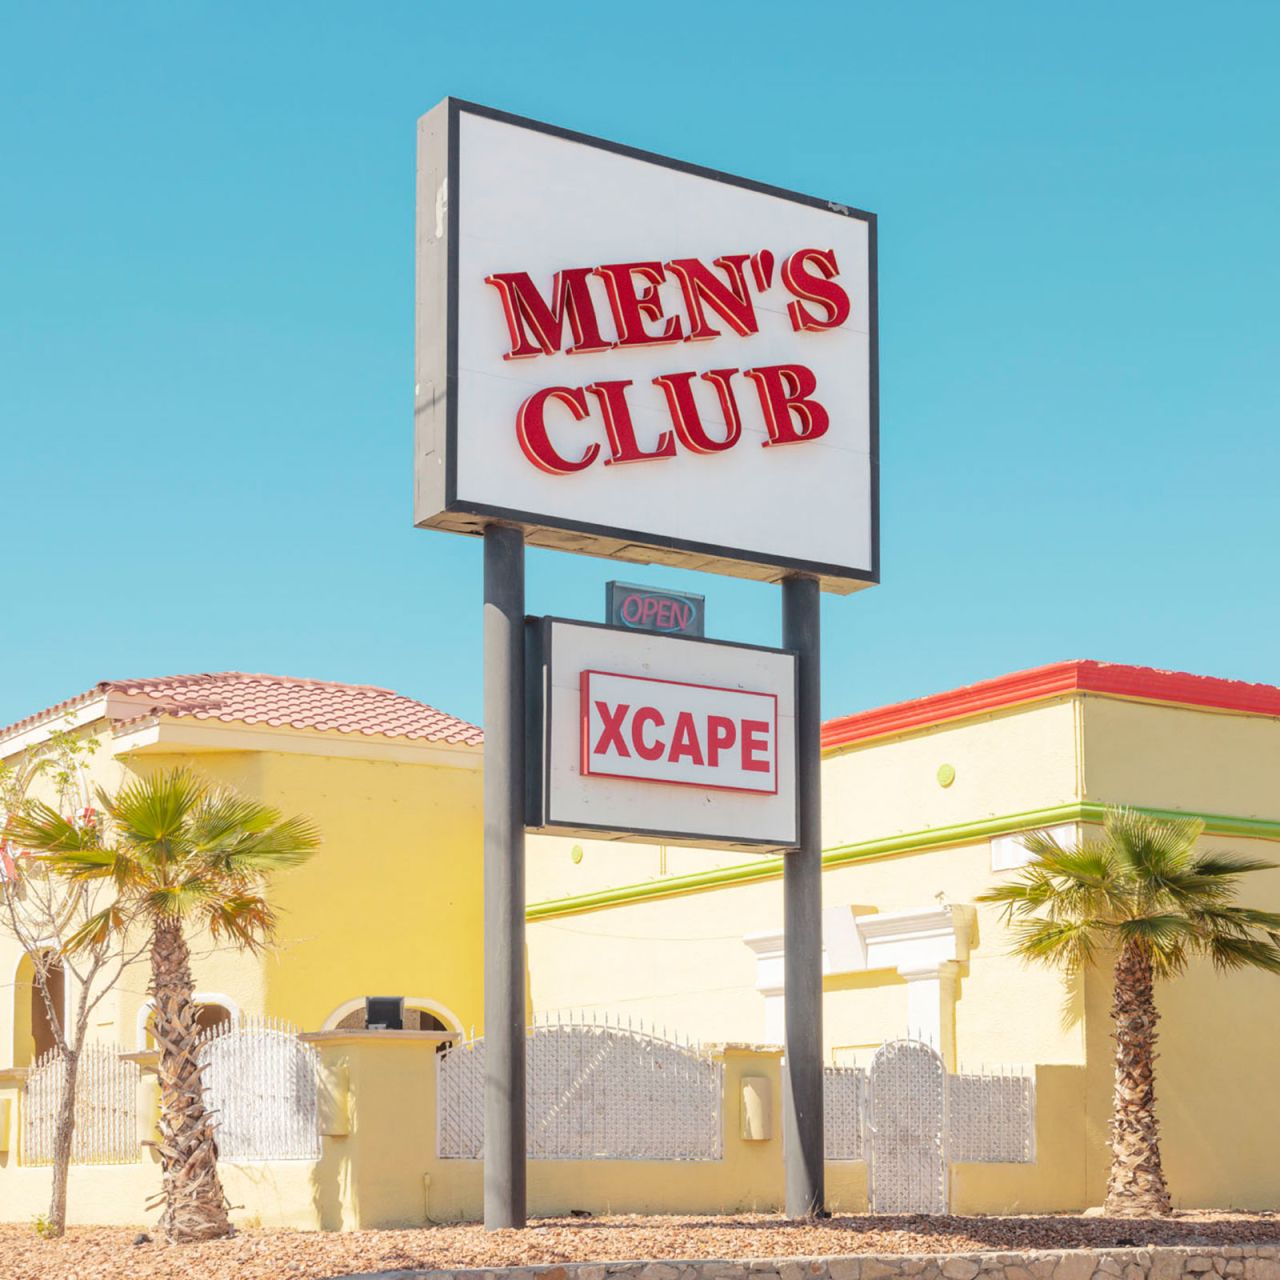 The Xcape Mens Club in El Paso, Texas.